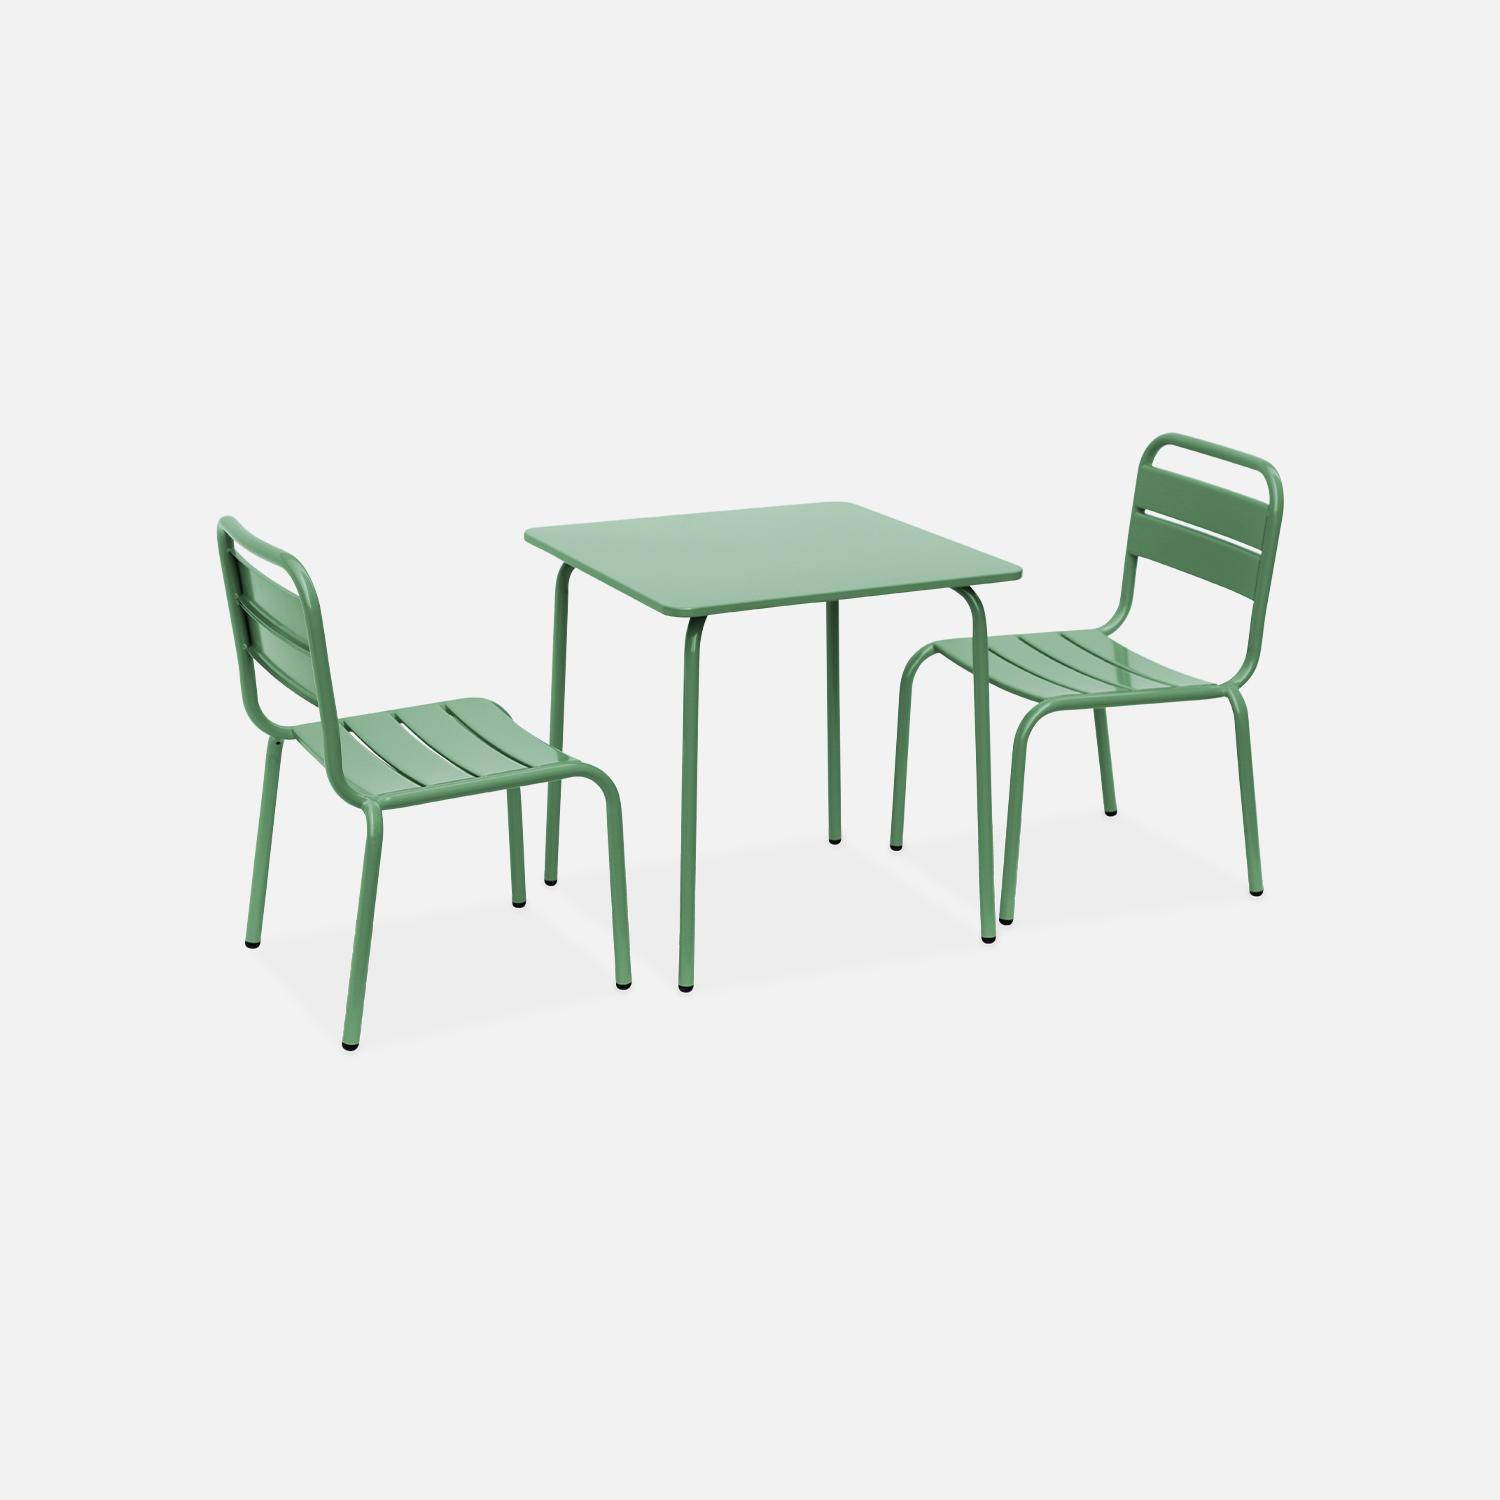 Tisch 48x48cm und 2 Stühle für Kinder, graugrün, 48x48cm, für draußen verwendbar - Anna Photo4